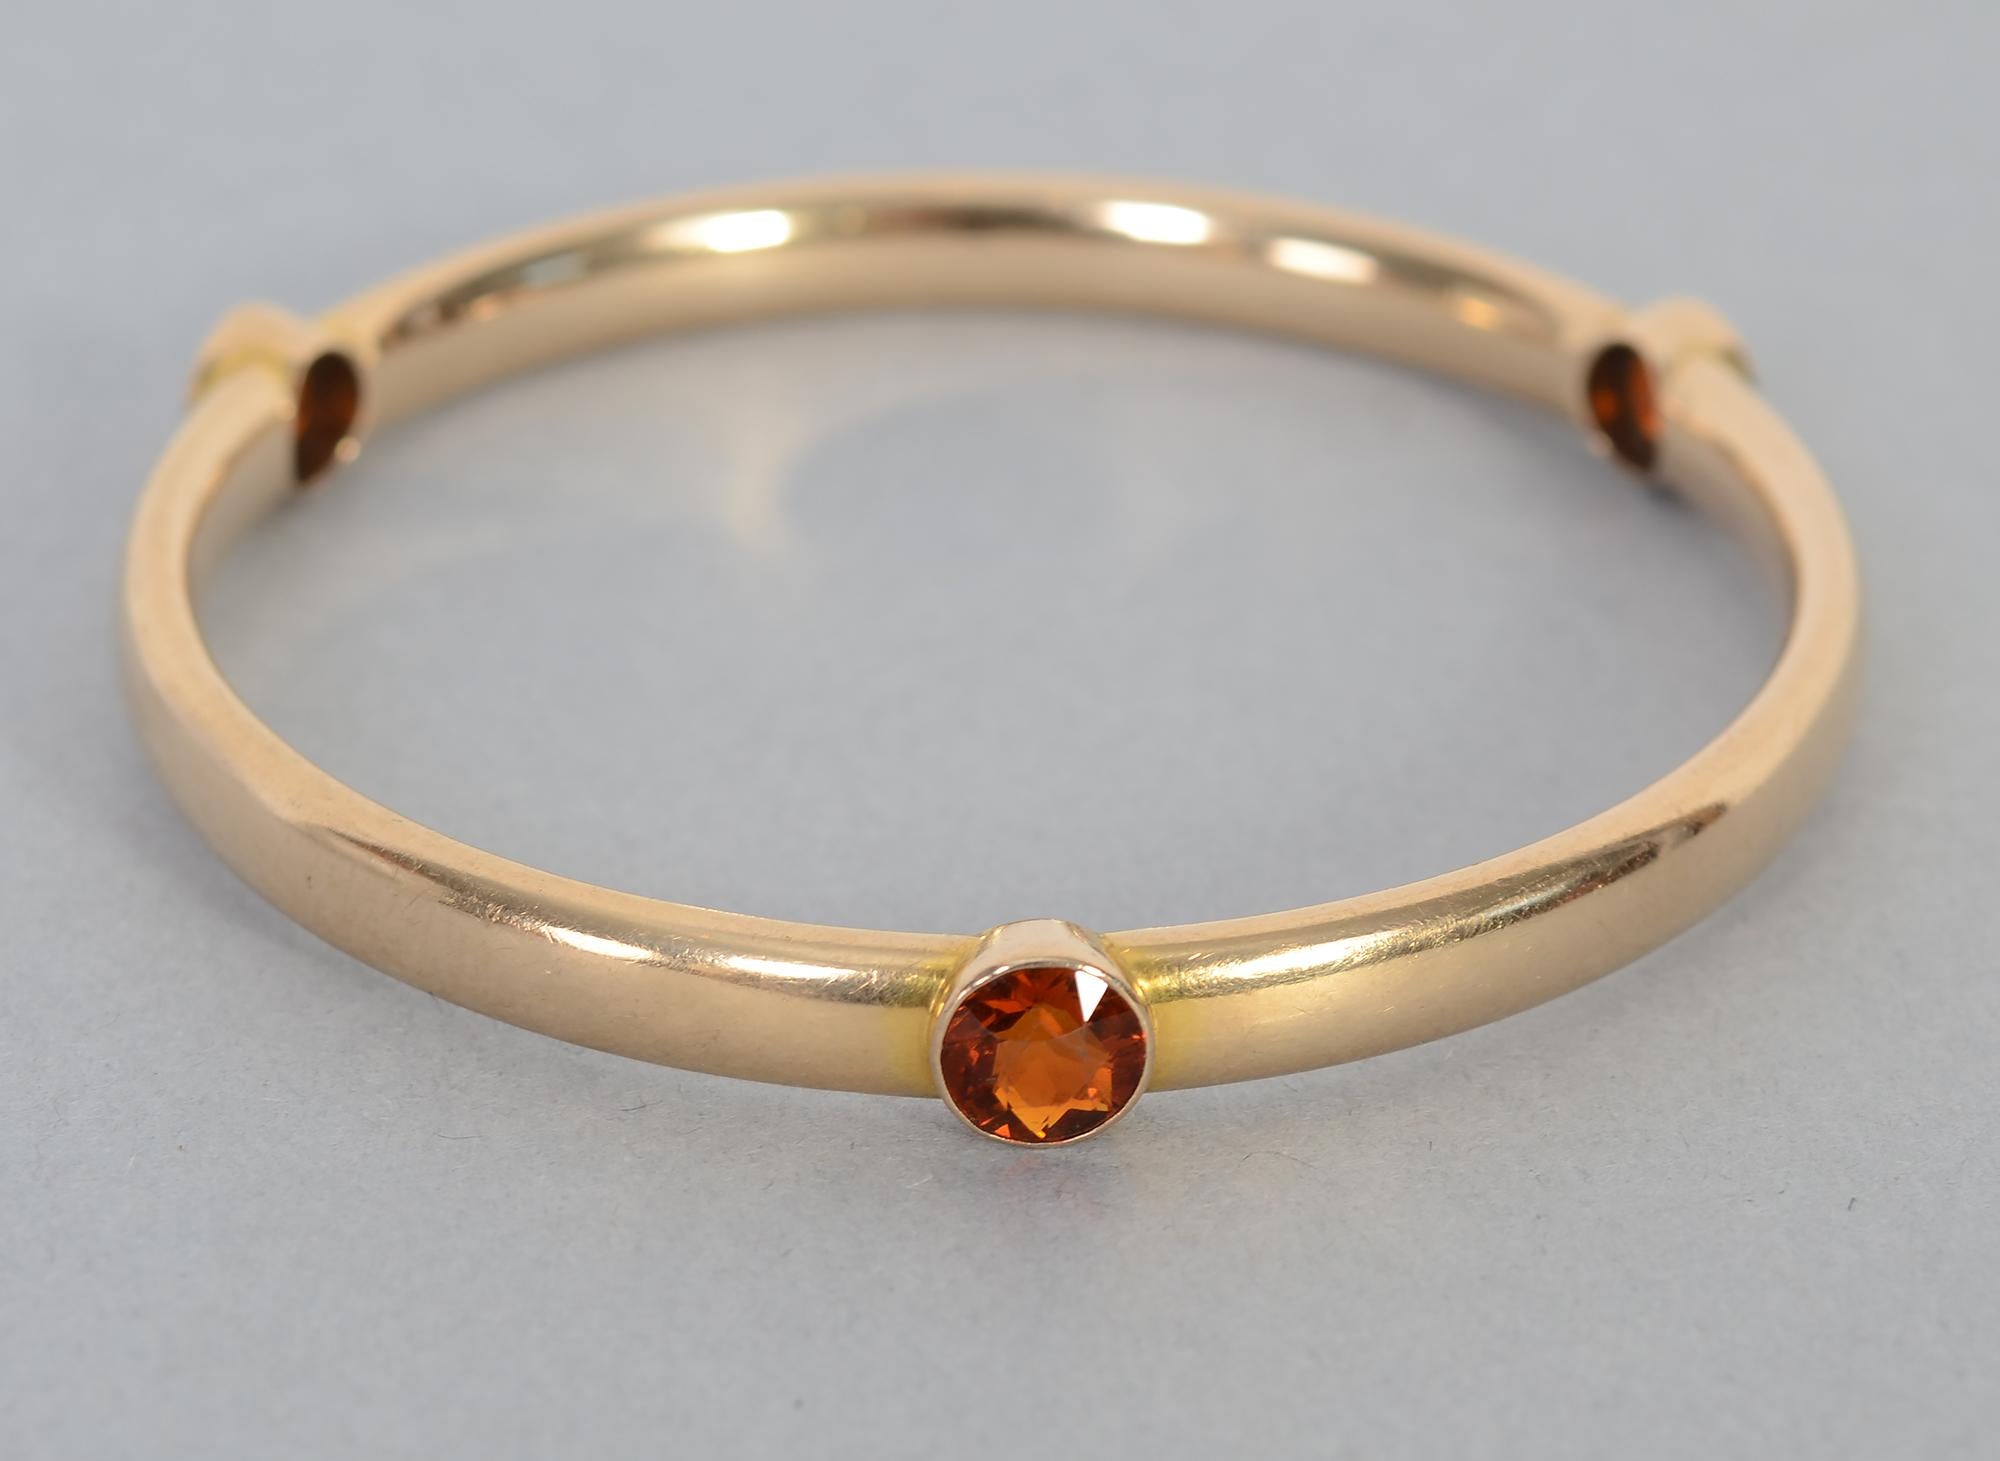 Ce qui rend ce bracelet classique en or 14 carats inhabituel, ce sont les trois citrines facettées qui le parsèment.
Chaque pierre fait 1/4